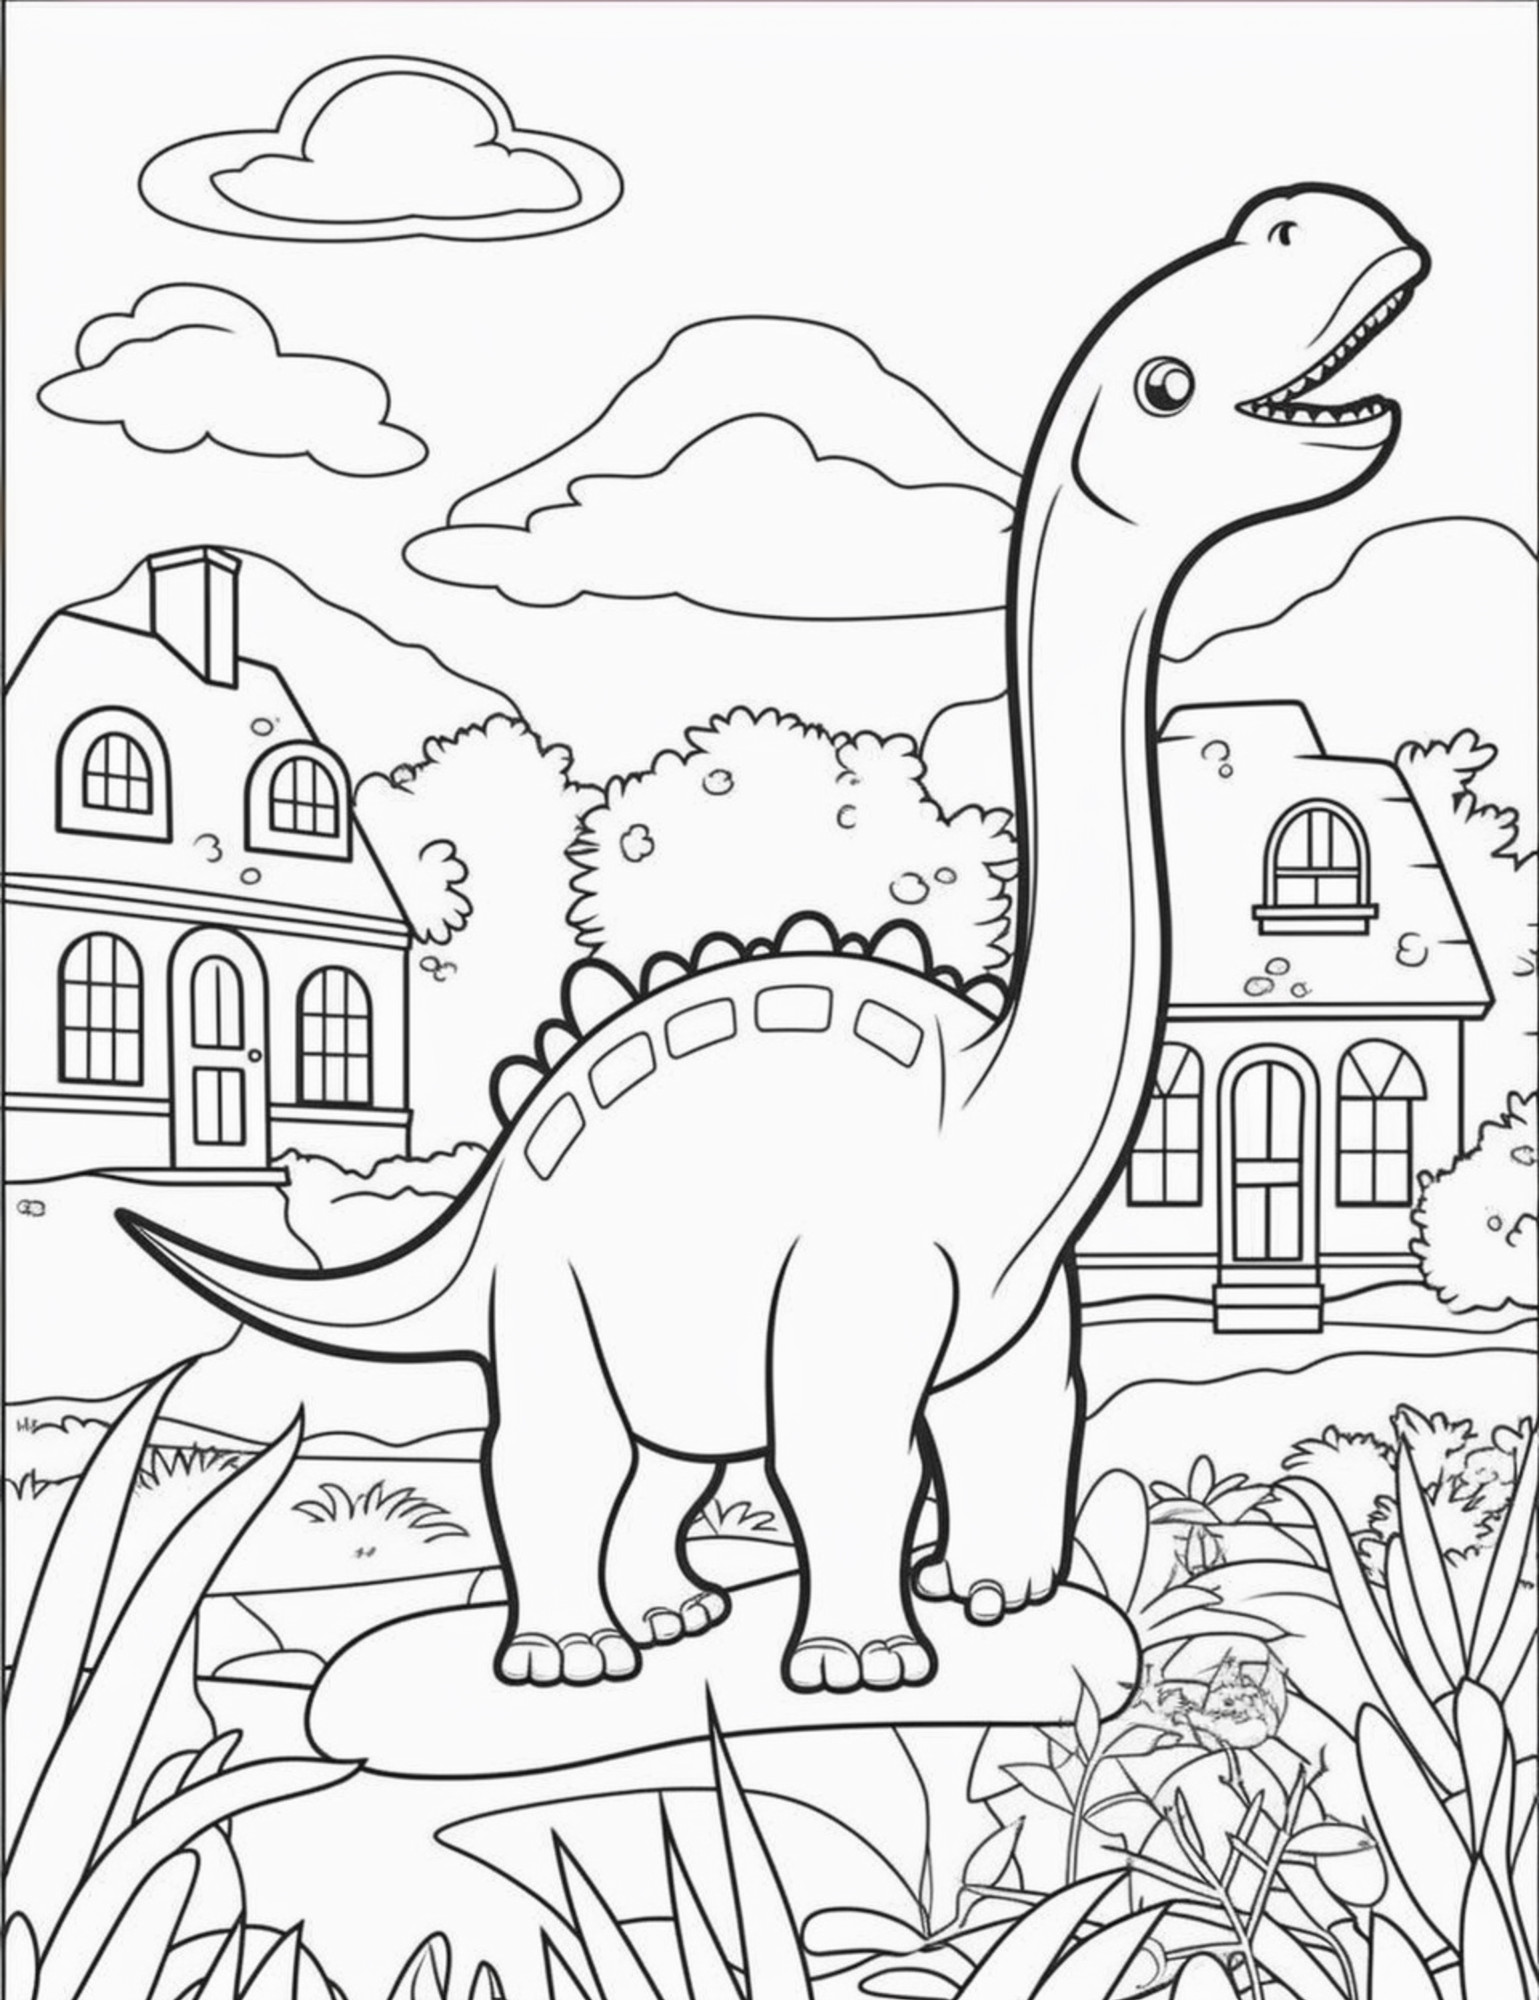 Раскраска для детей: динозавр с длинной шеей